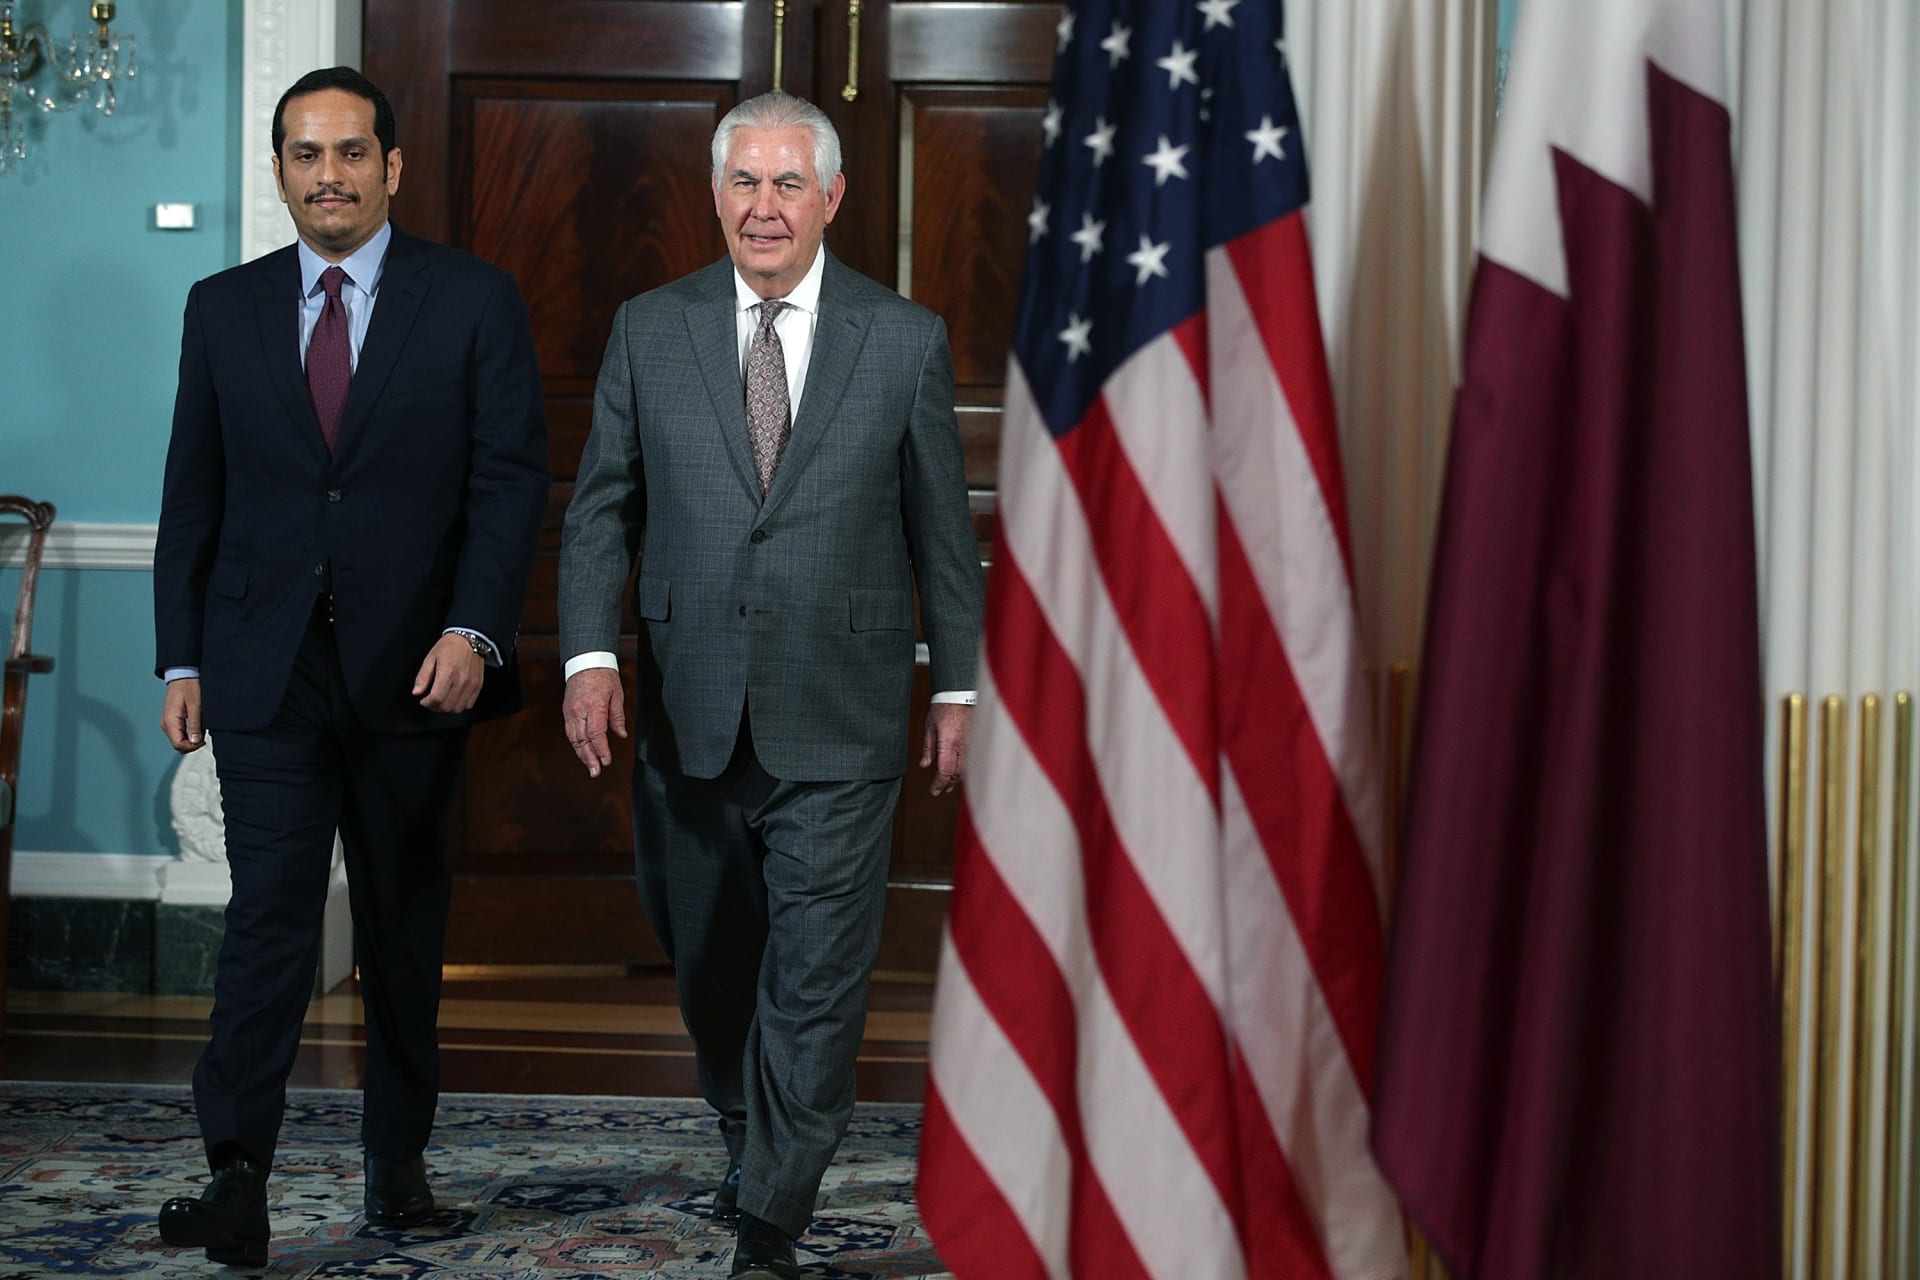 وزير خارجية قطر يتهم السعودية بممارسة "لعبة خطيرة" والتدخل في استقالة الحريري